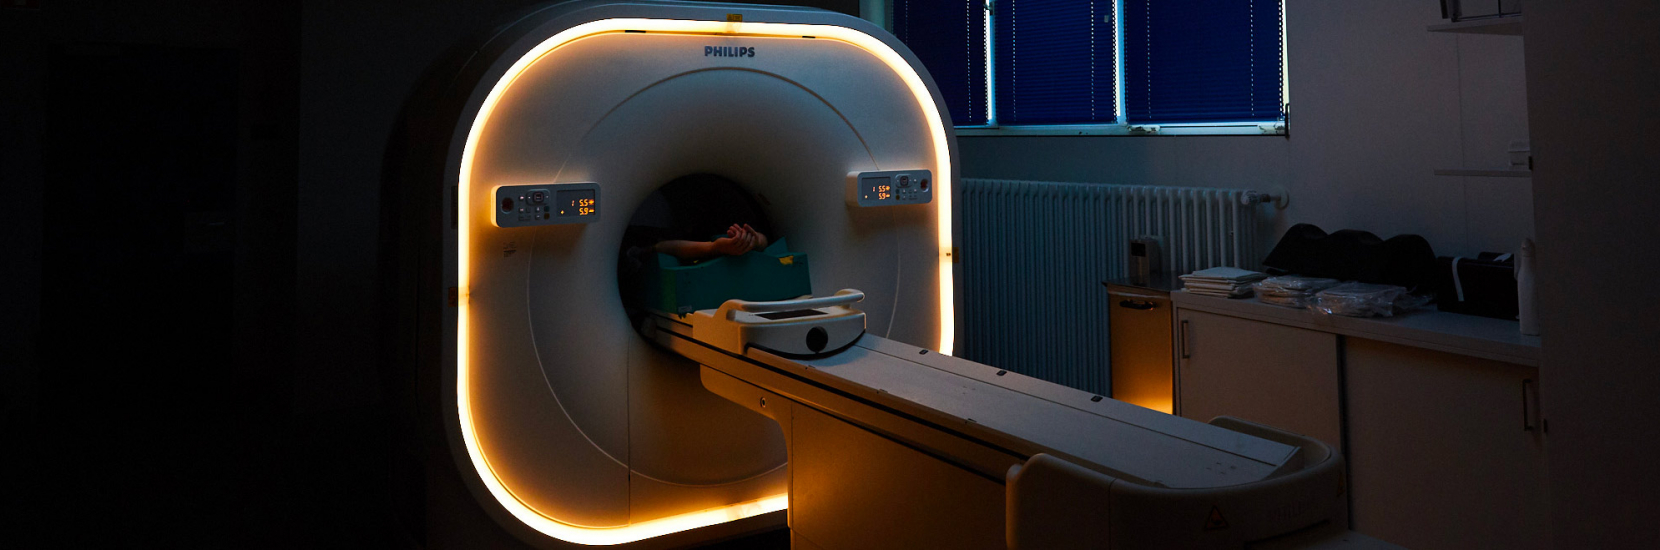 Stand: Les risques associés aux appareils de radiologie